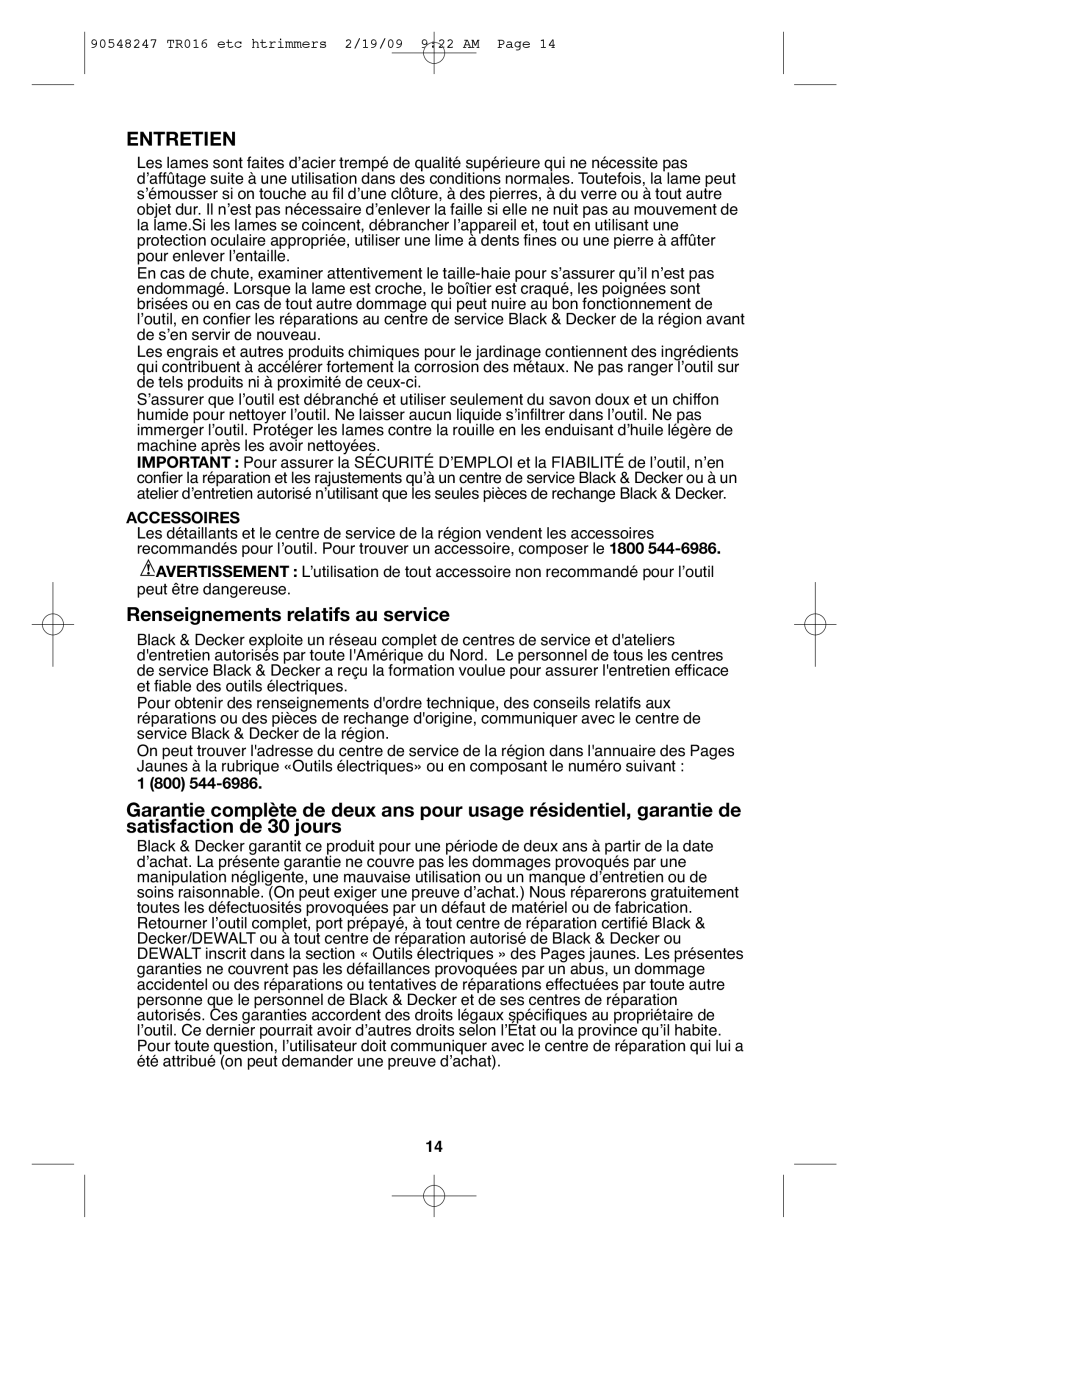 Black & Decker 90548247 instruction manual Entretien, Renseignements relatifs au service, Accessoires, 1 800 